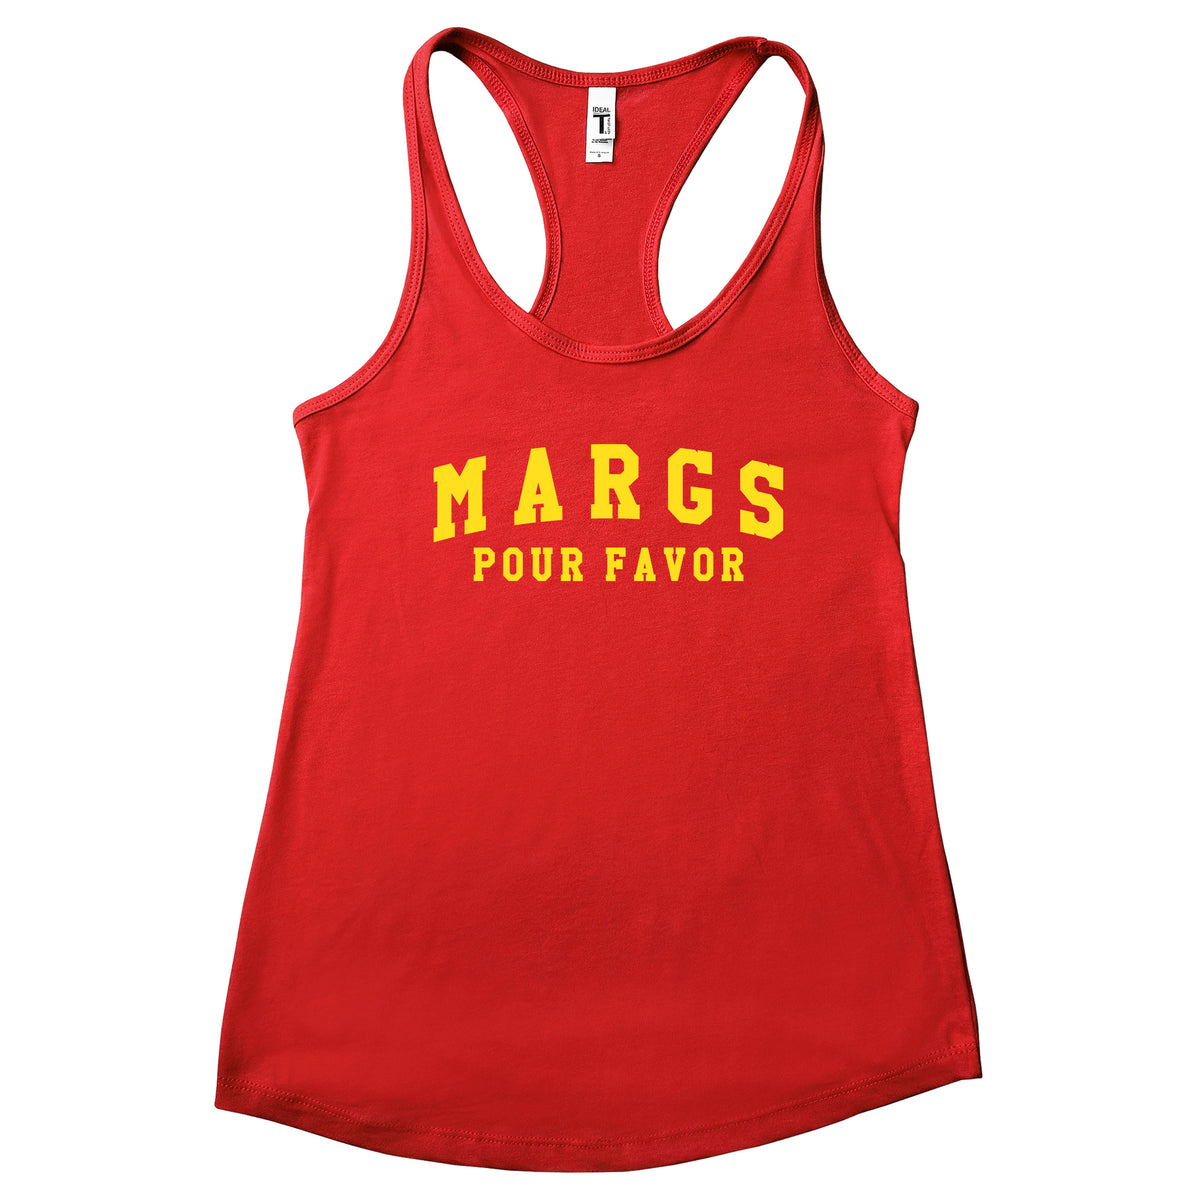 Margs Pour Favor Tank Top